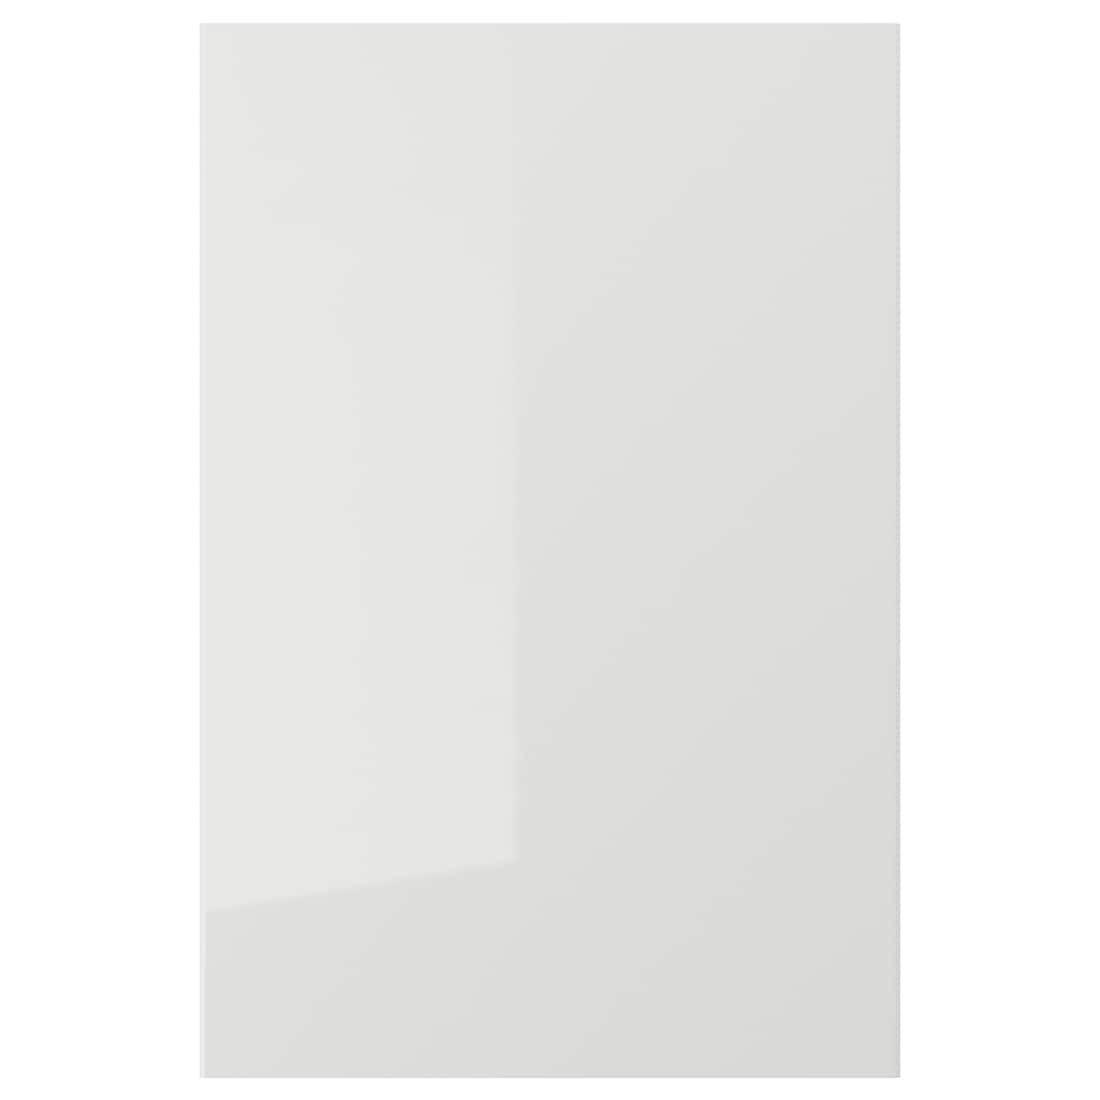 RINGHULT РИНГУЛЬТ Дверь, глянцевый светло-серый, 40x60 см